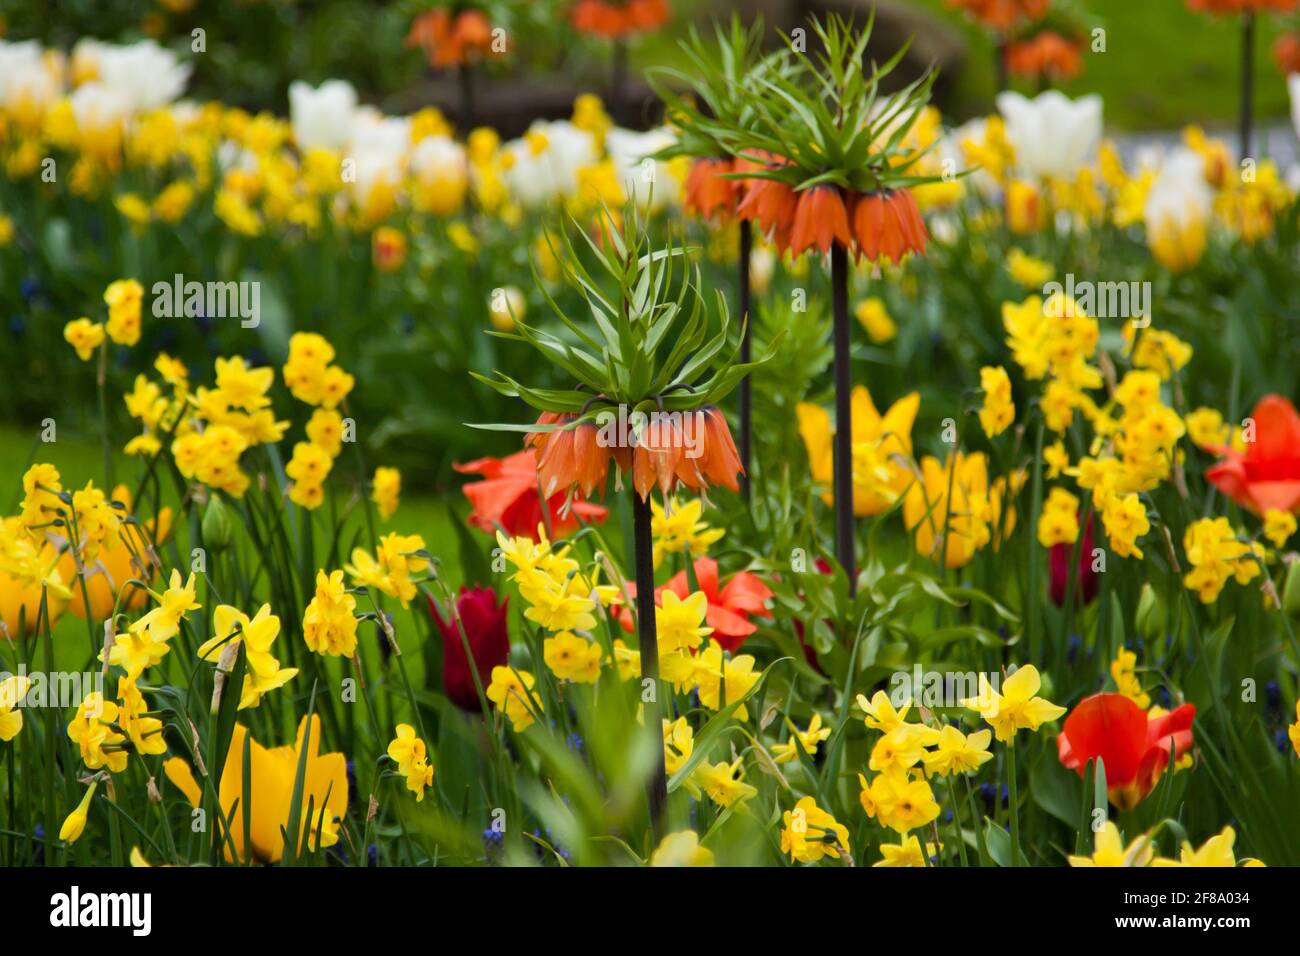 Tulipanes hermosos, fondo de tulipanes borrosos en un jardín de flores de tulipanes. Naturaleza, keukenhof, niederland Foto de stock